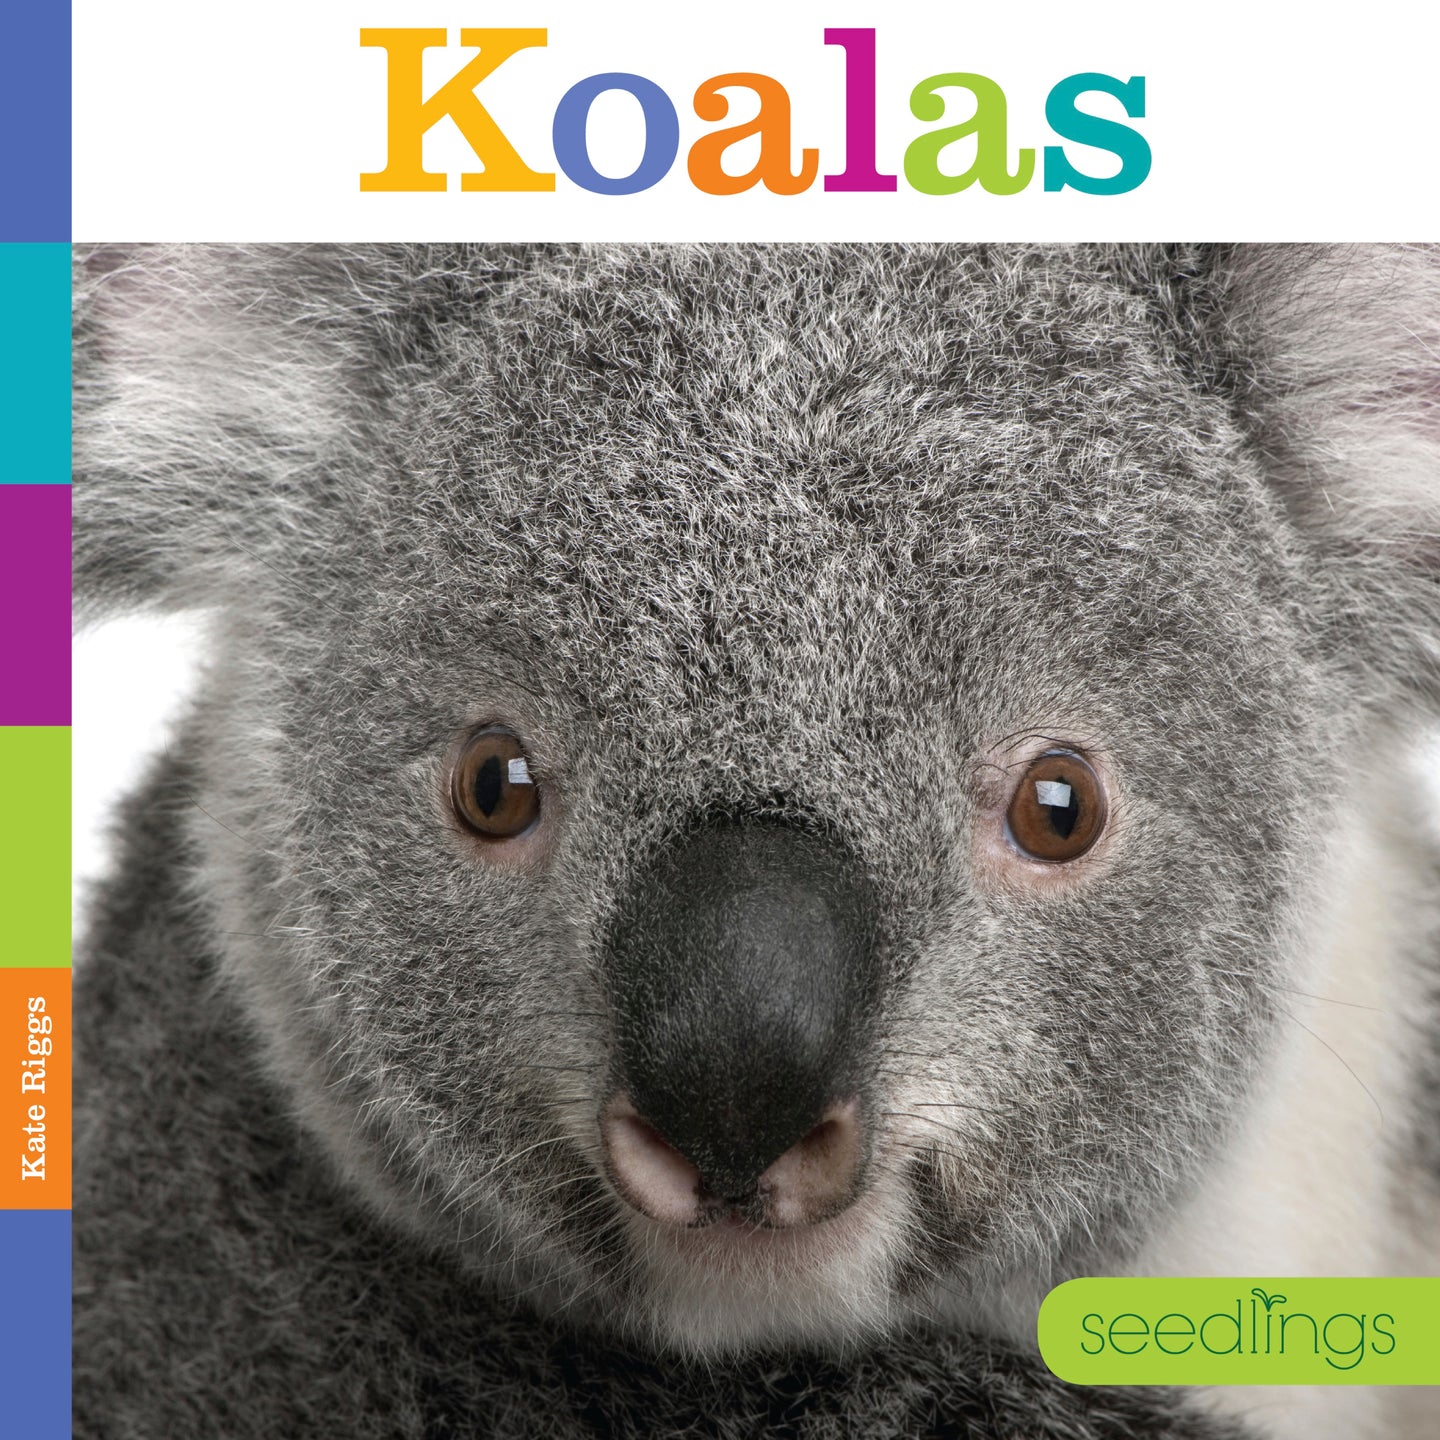 Seedlings: Koalas